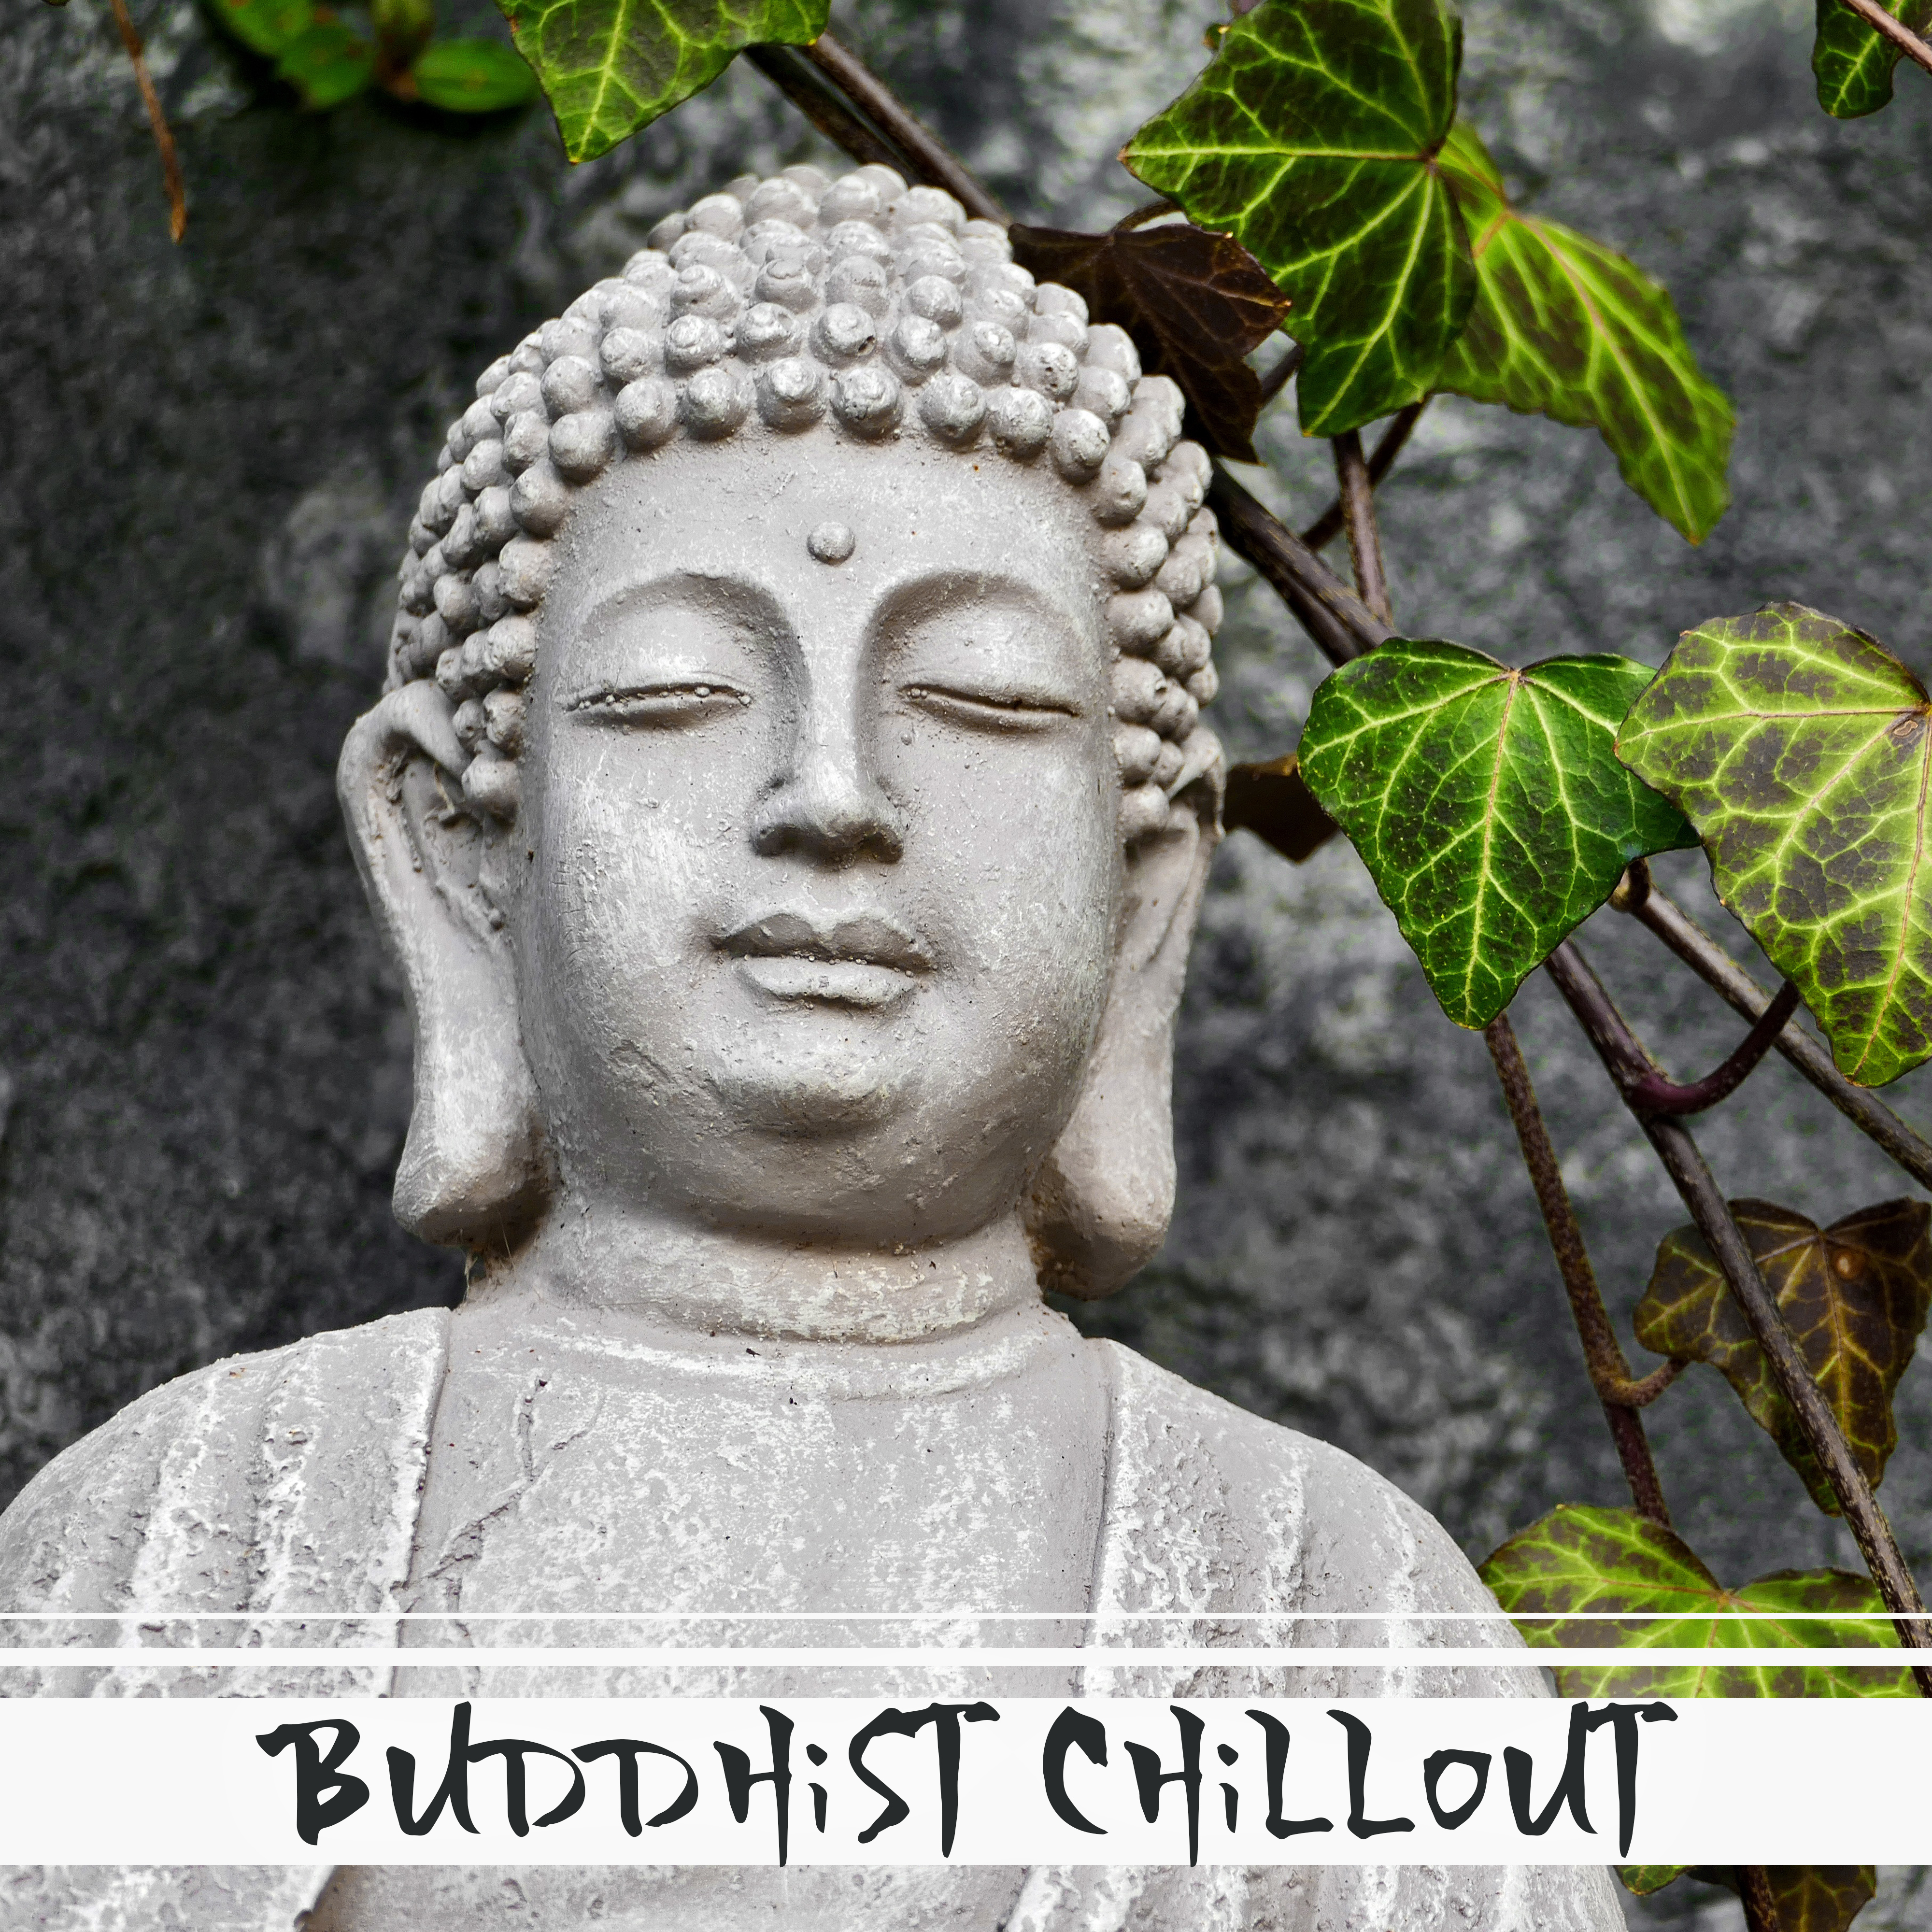 Buddhist Chillout